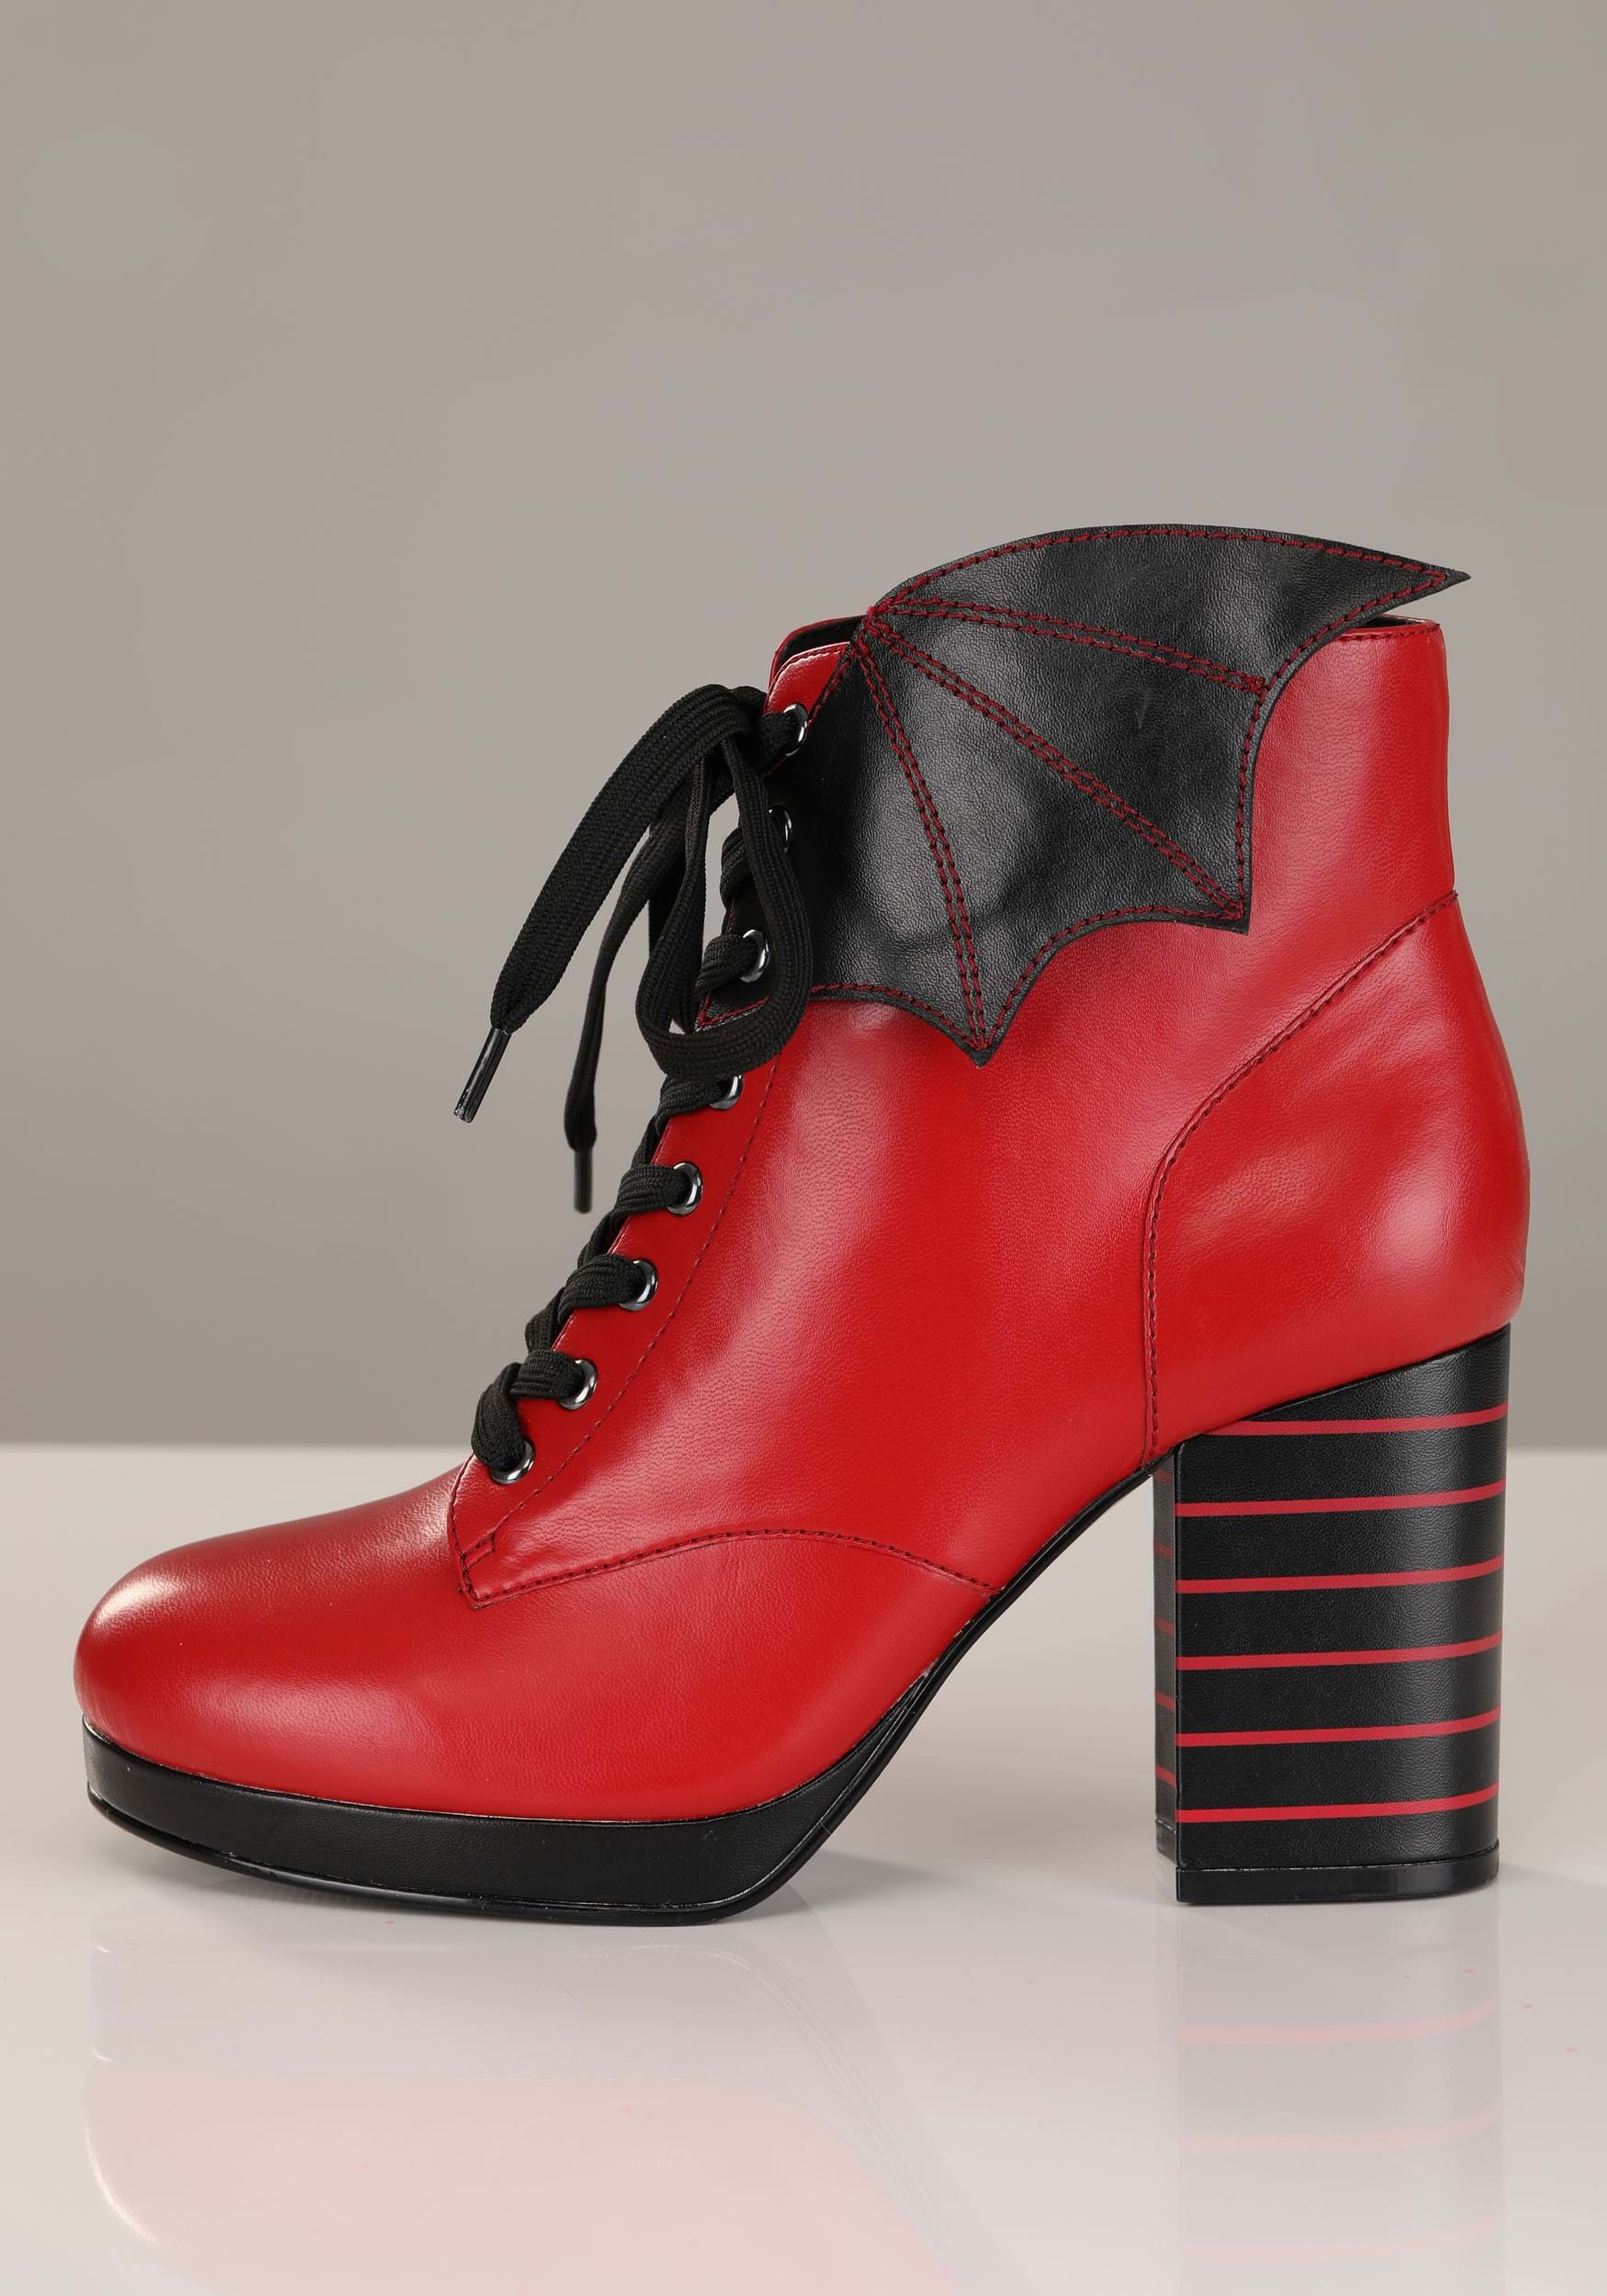 Mavis Hotel Transylvania Heeled Boots For Women